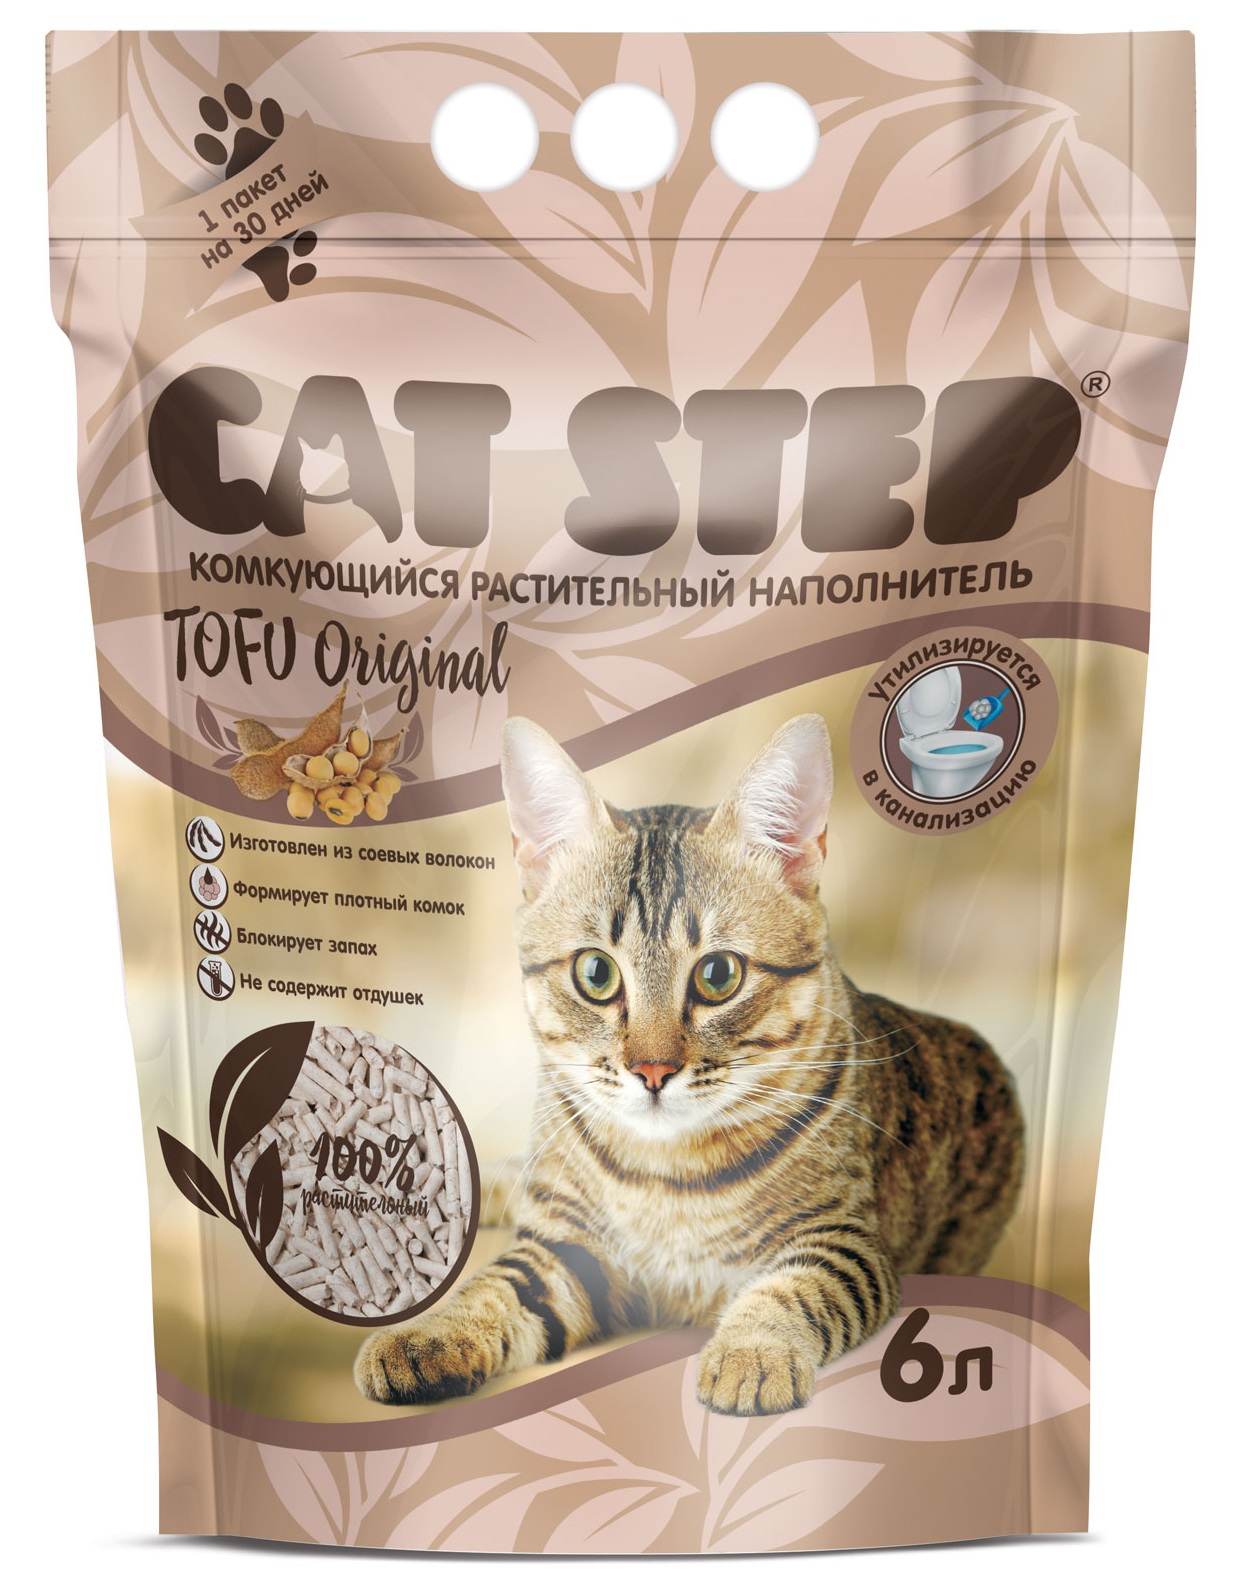 Наполнитель комкующийся растительный для кошачьего туалета Cat step tofu original 6 л